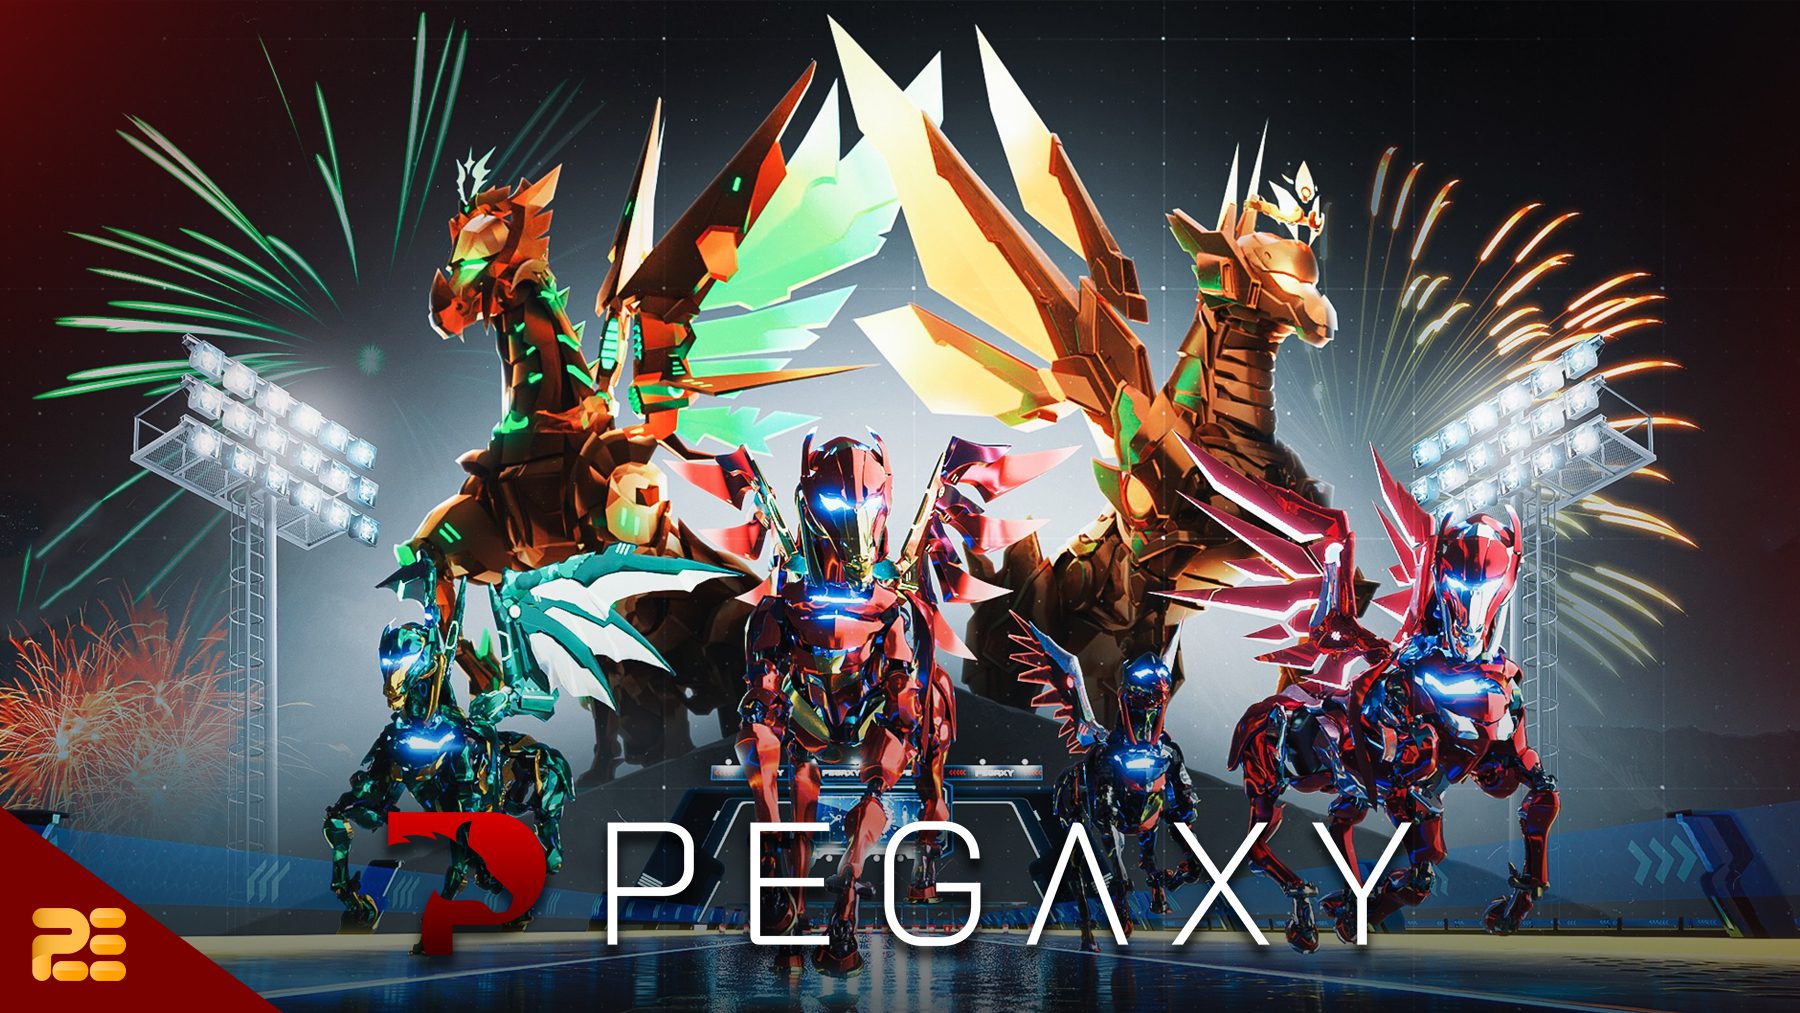 Pegaxy 3D controlado por el jugador